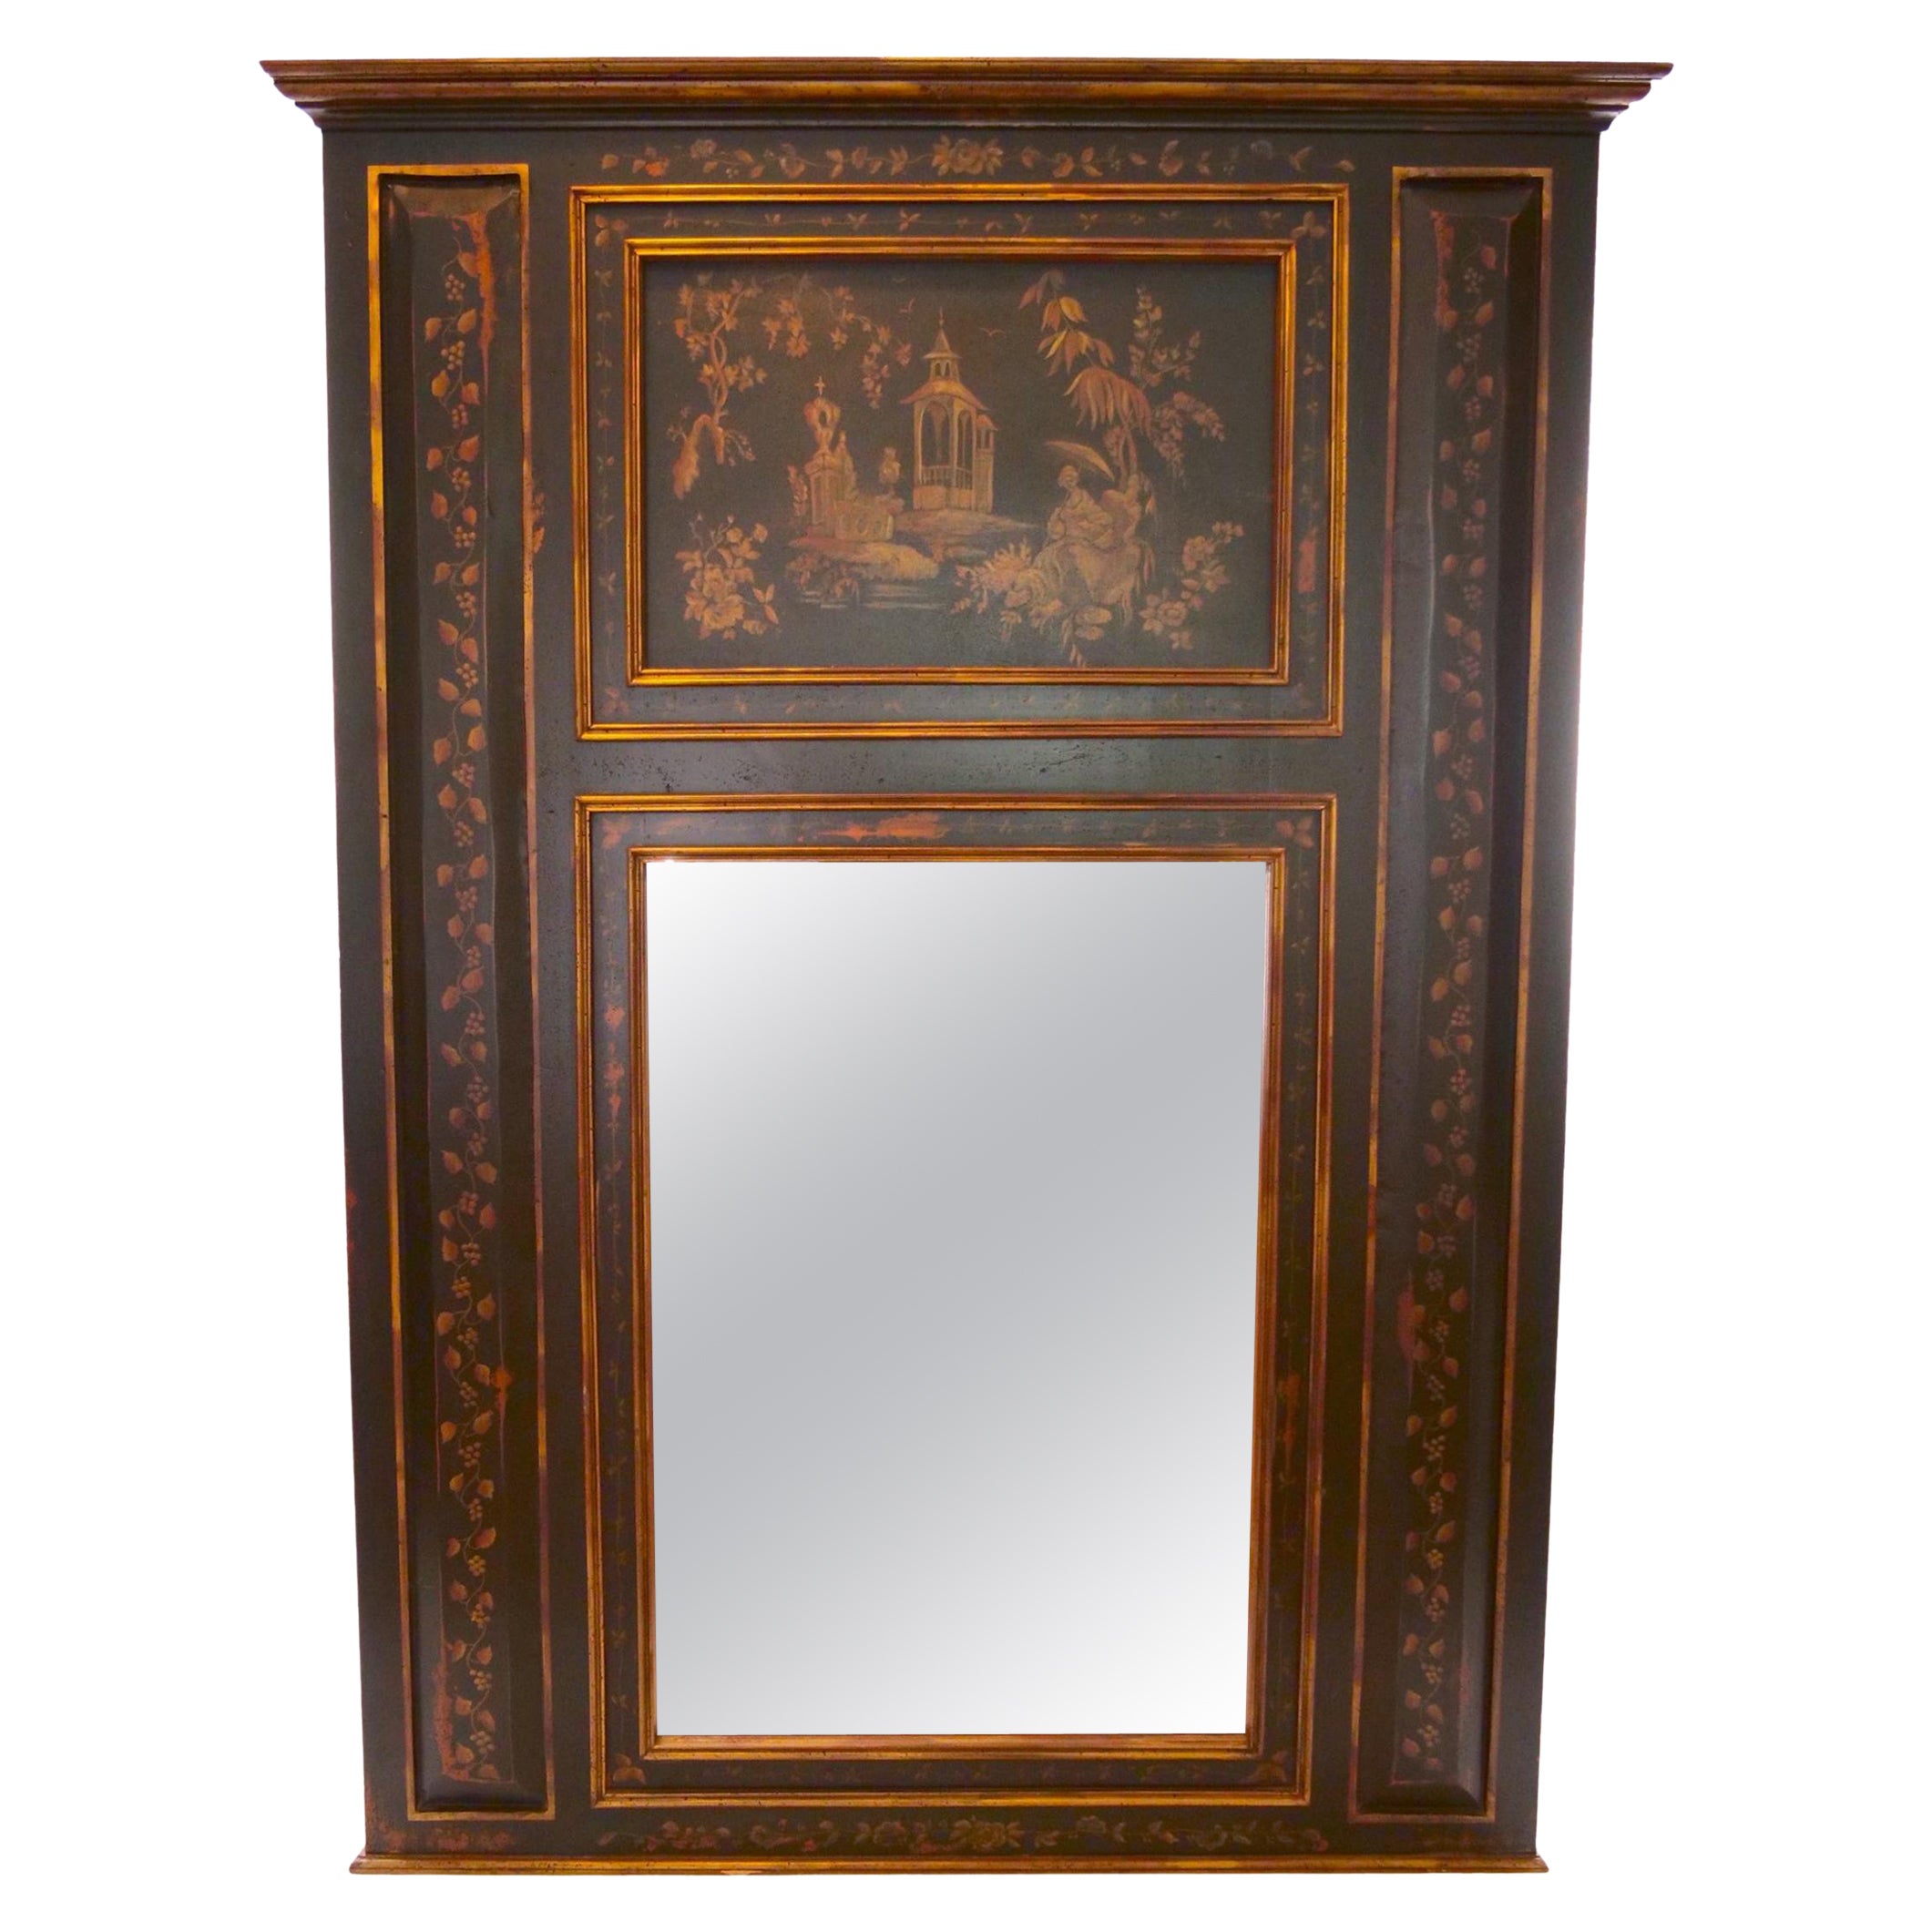 Miroir Trumeau en bois peint à la main avec panneaux de chinoiserie